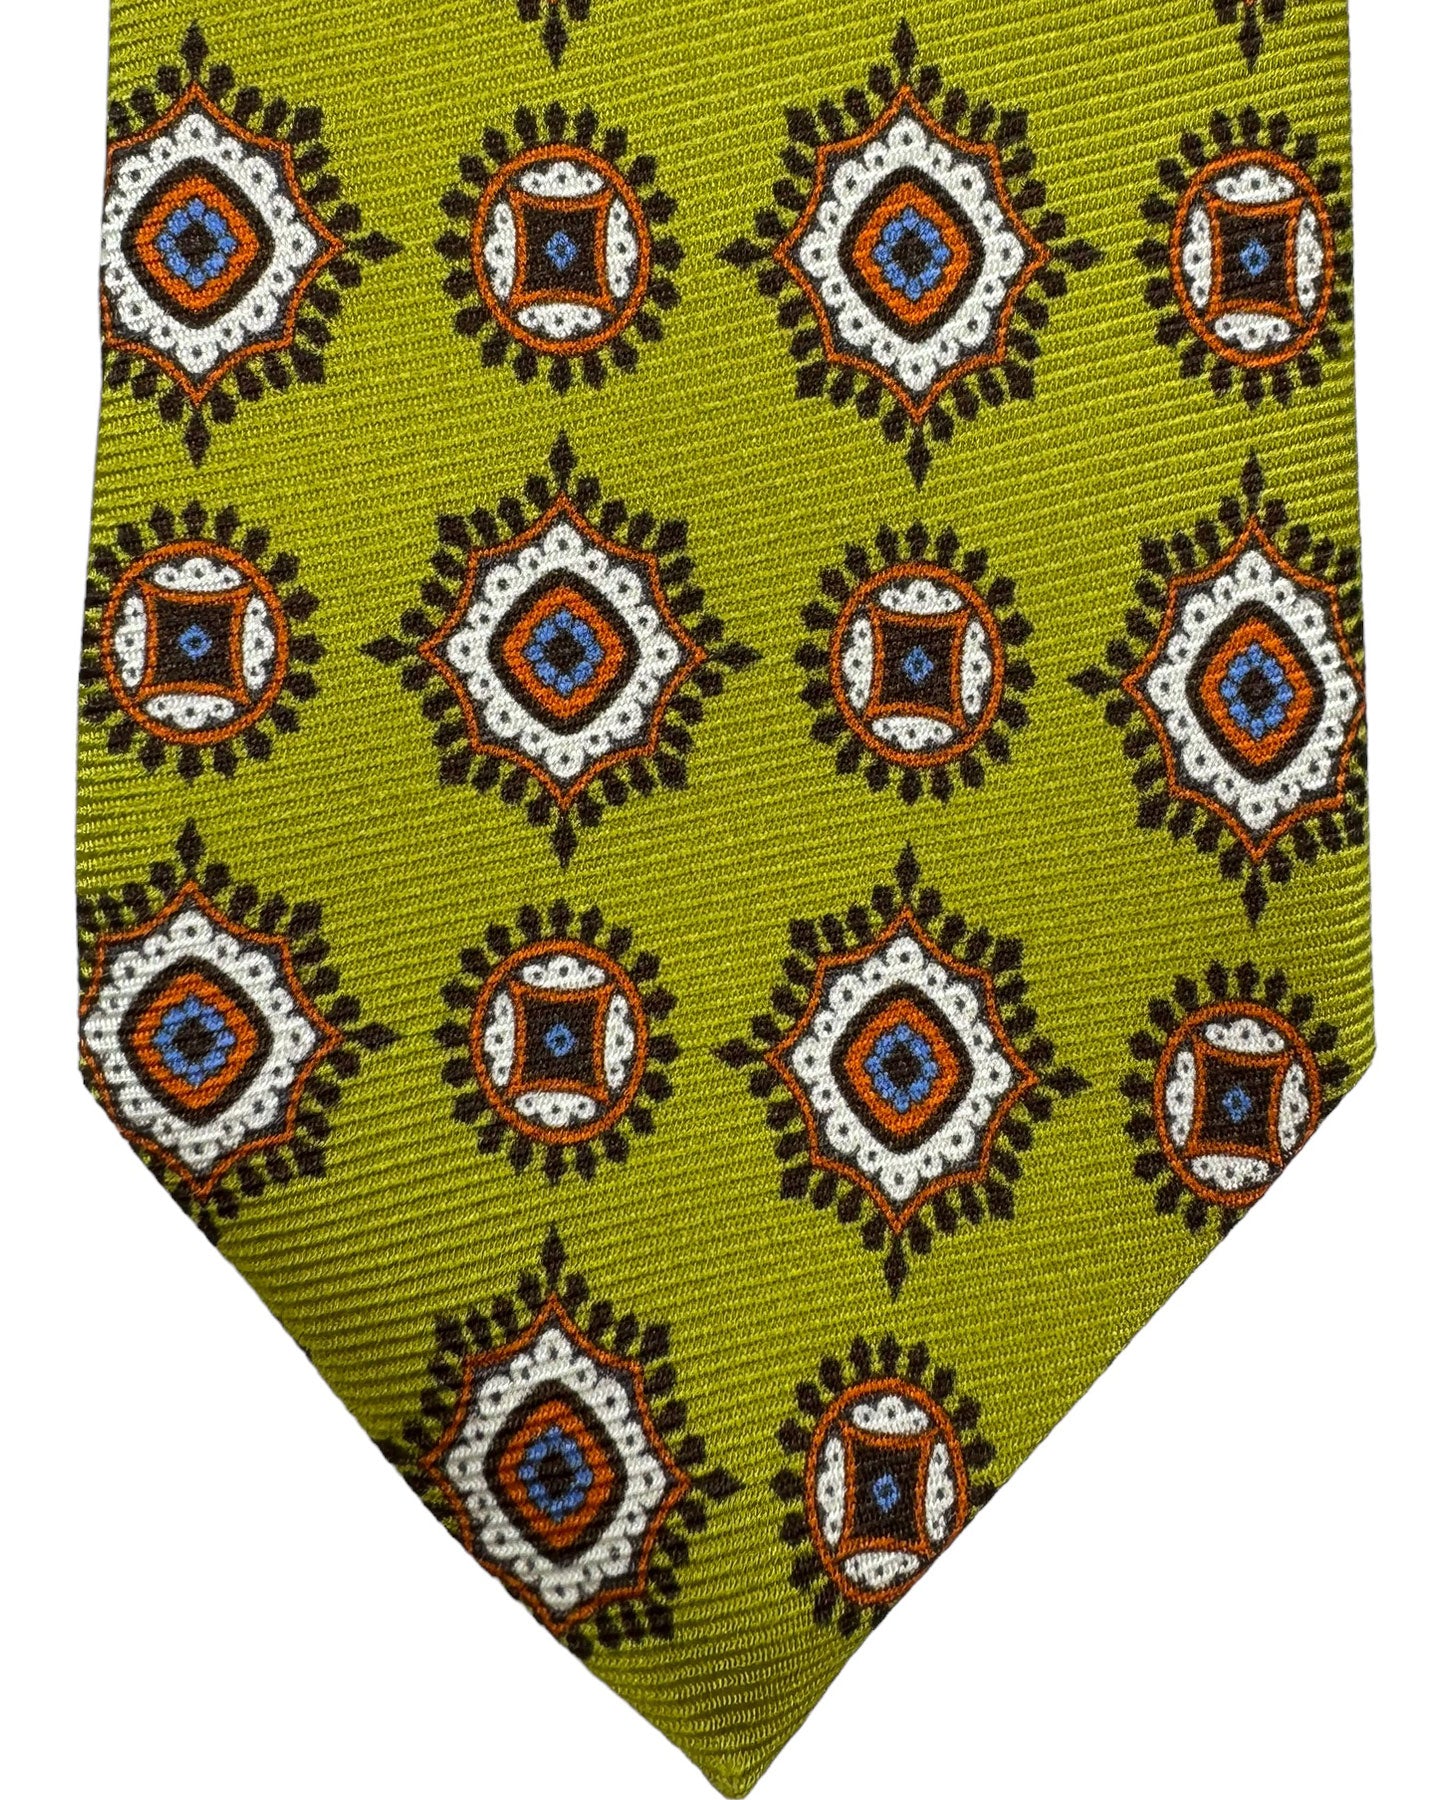 Kiton Silk Tie Olive Green Brown Navy Medallions - Sevenfold Necktie